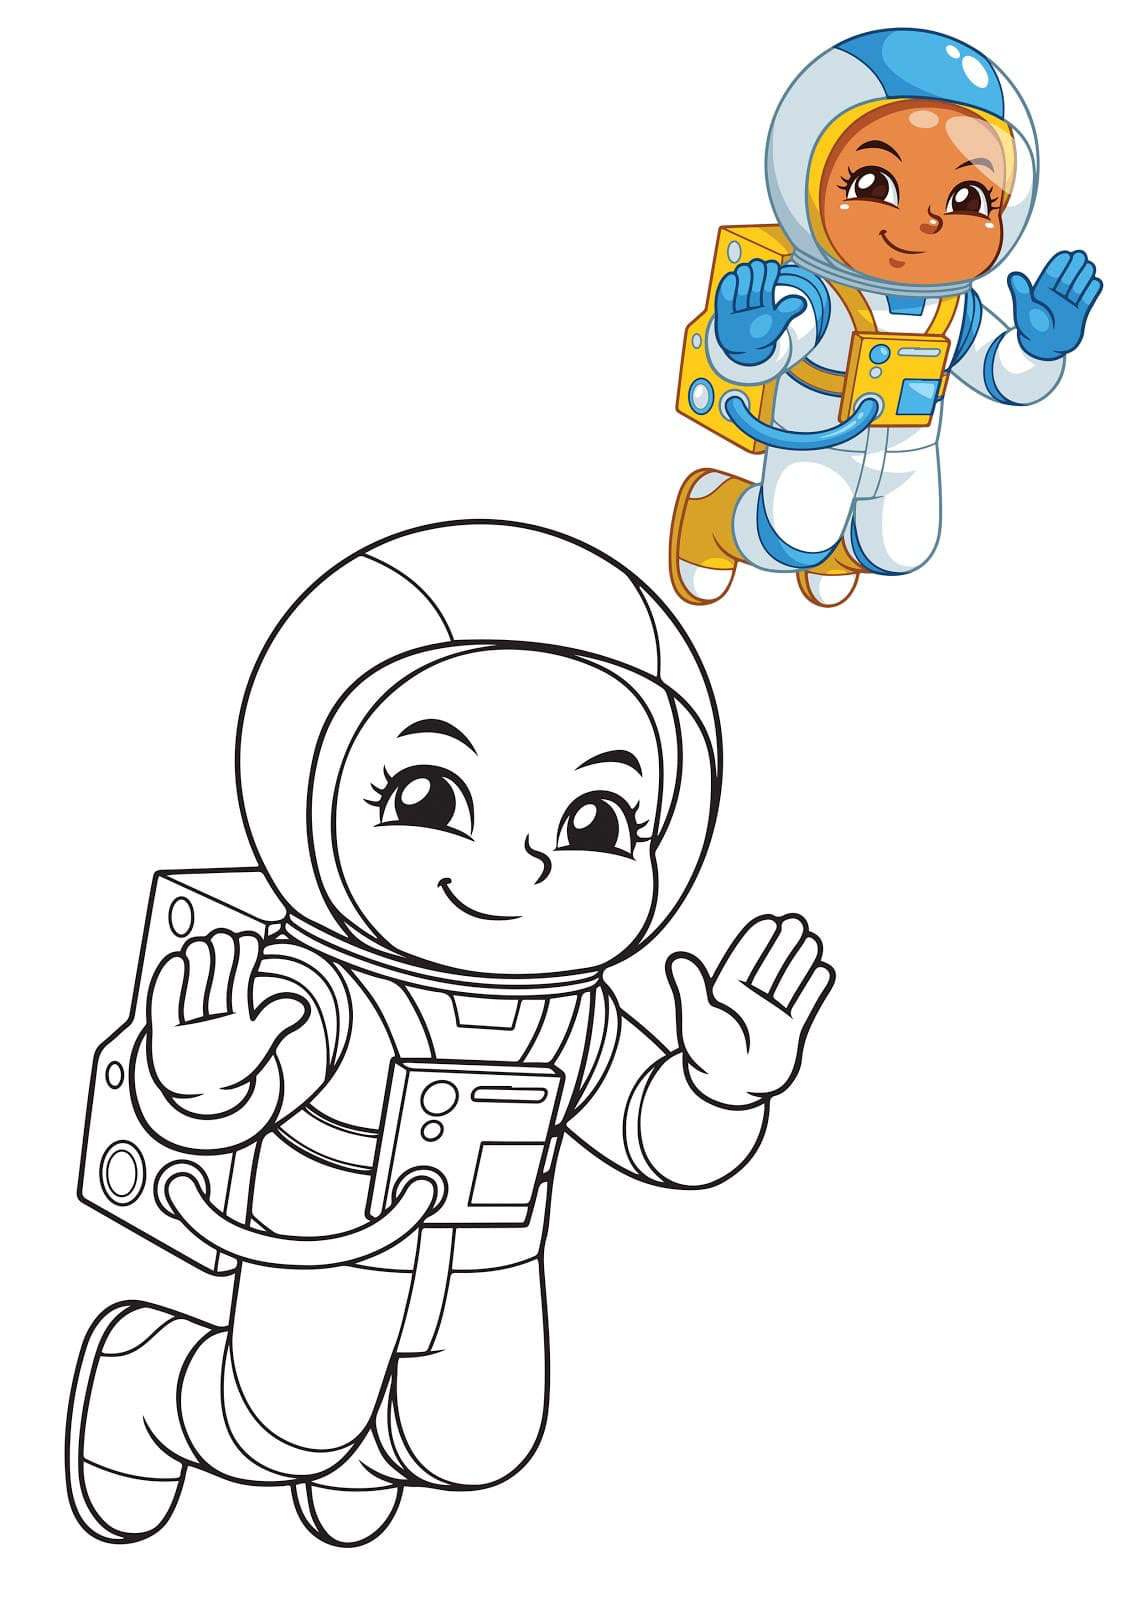 как нарисовать космонавта для детей поэтапно 11